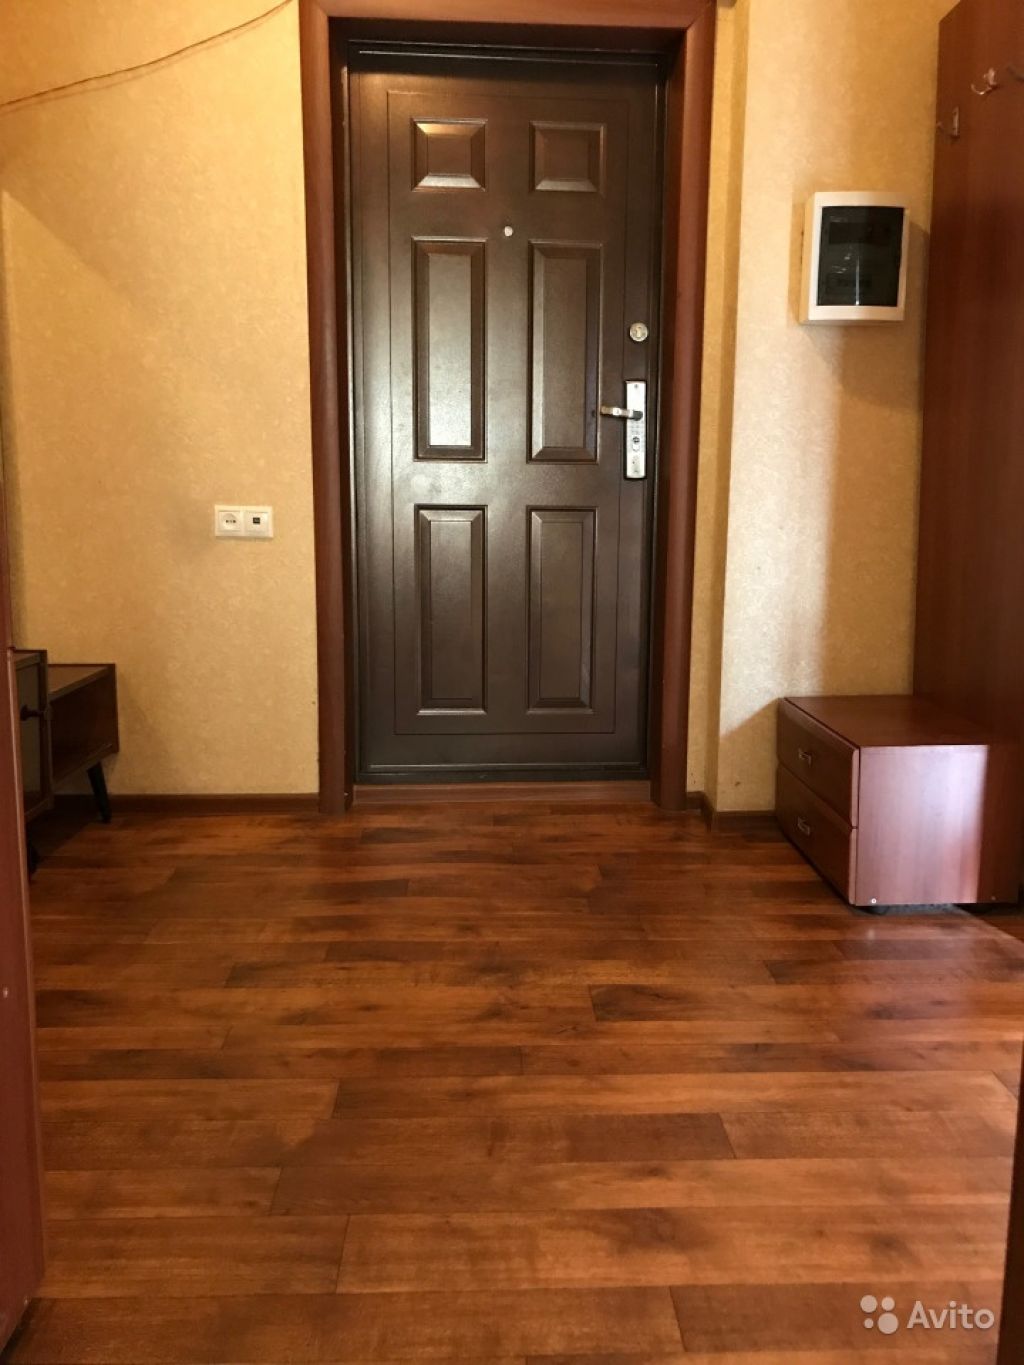 Сдам квартиру 3-к квартира 60 м² на 1 этаже 9-этажного панельного дома в Москве. Фото 1